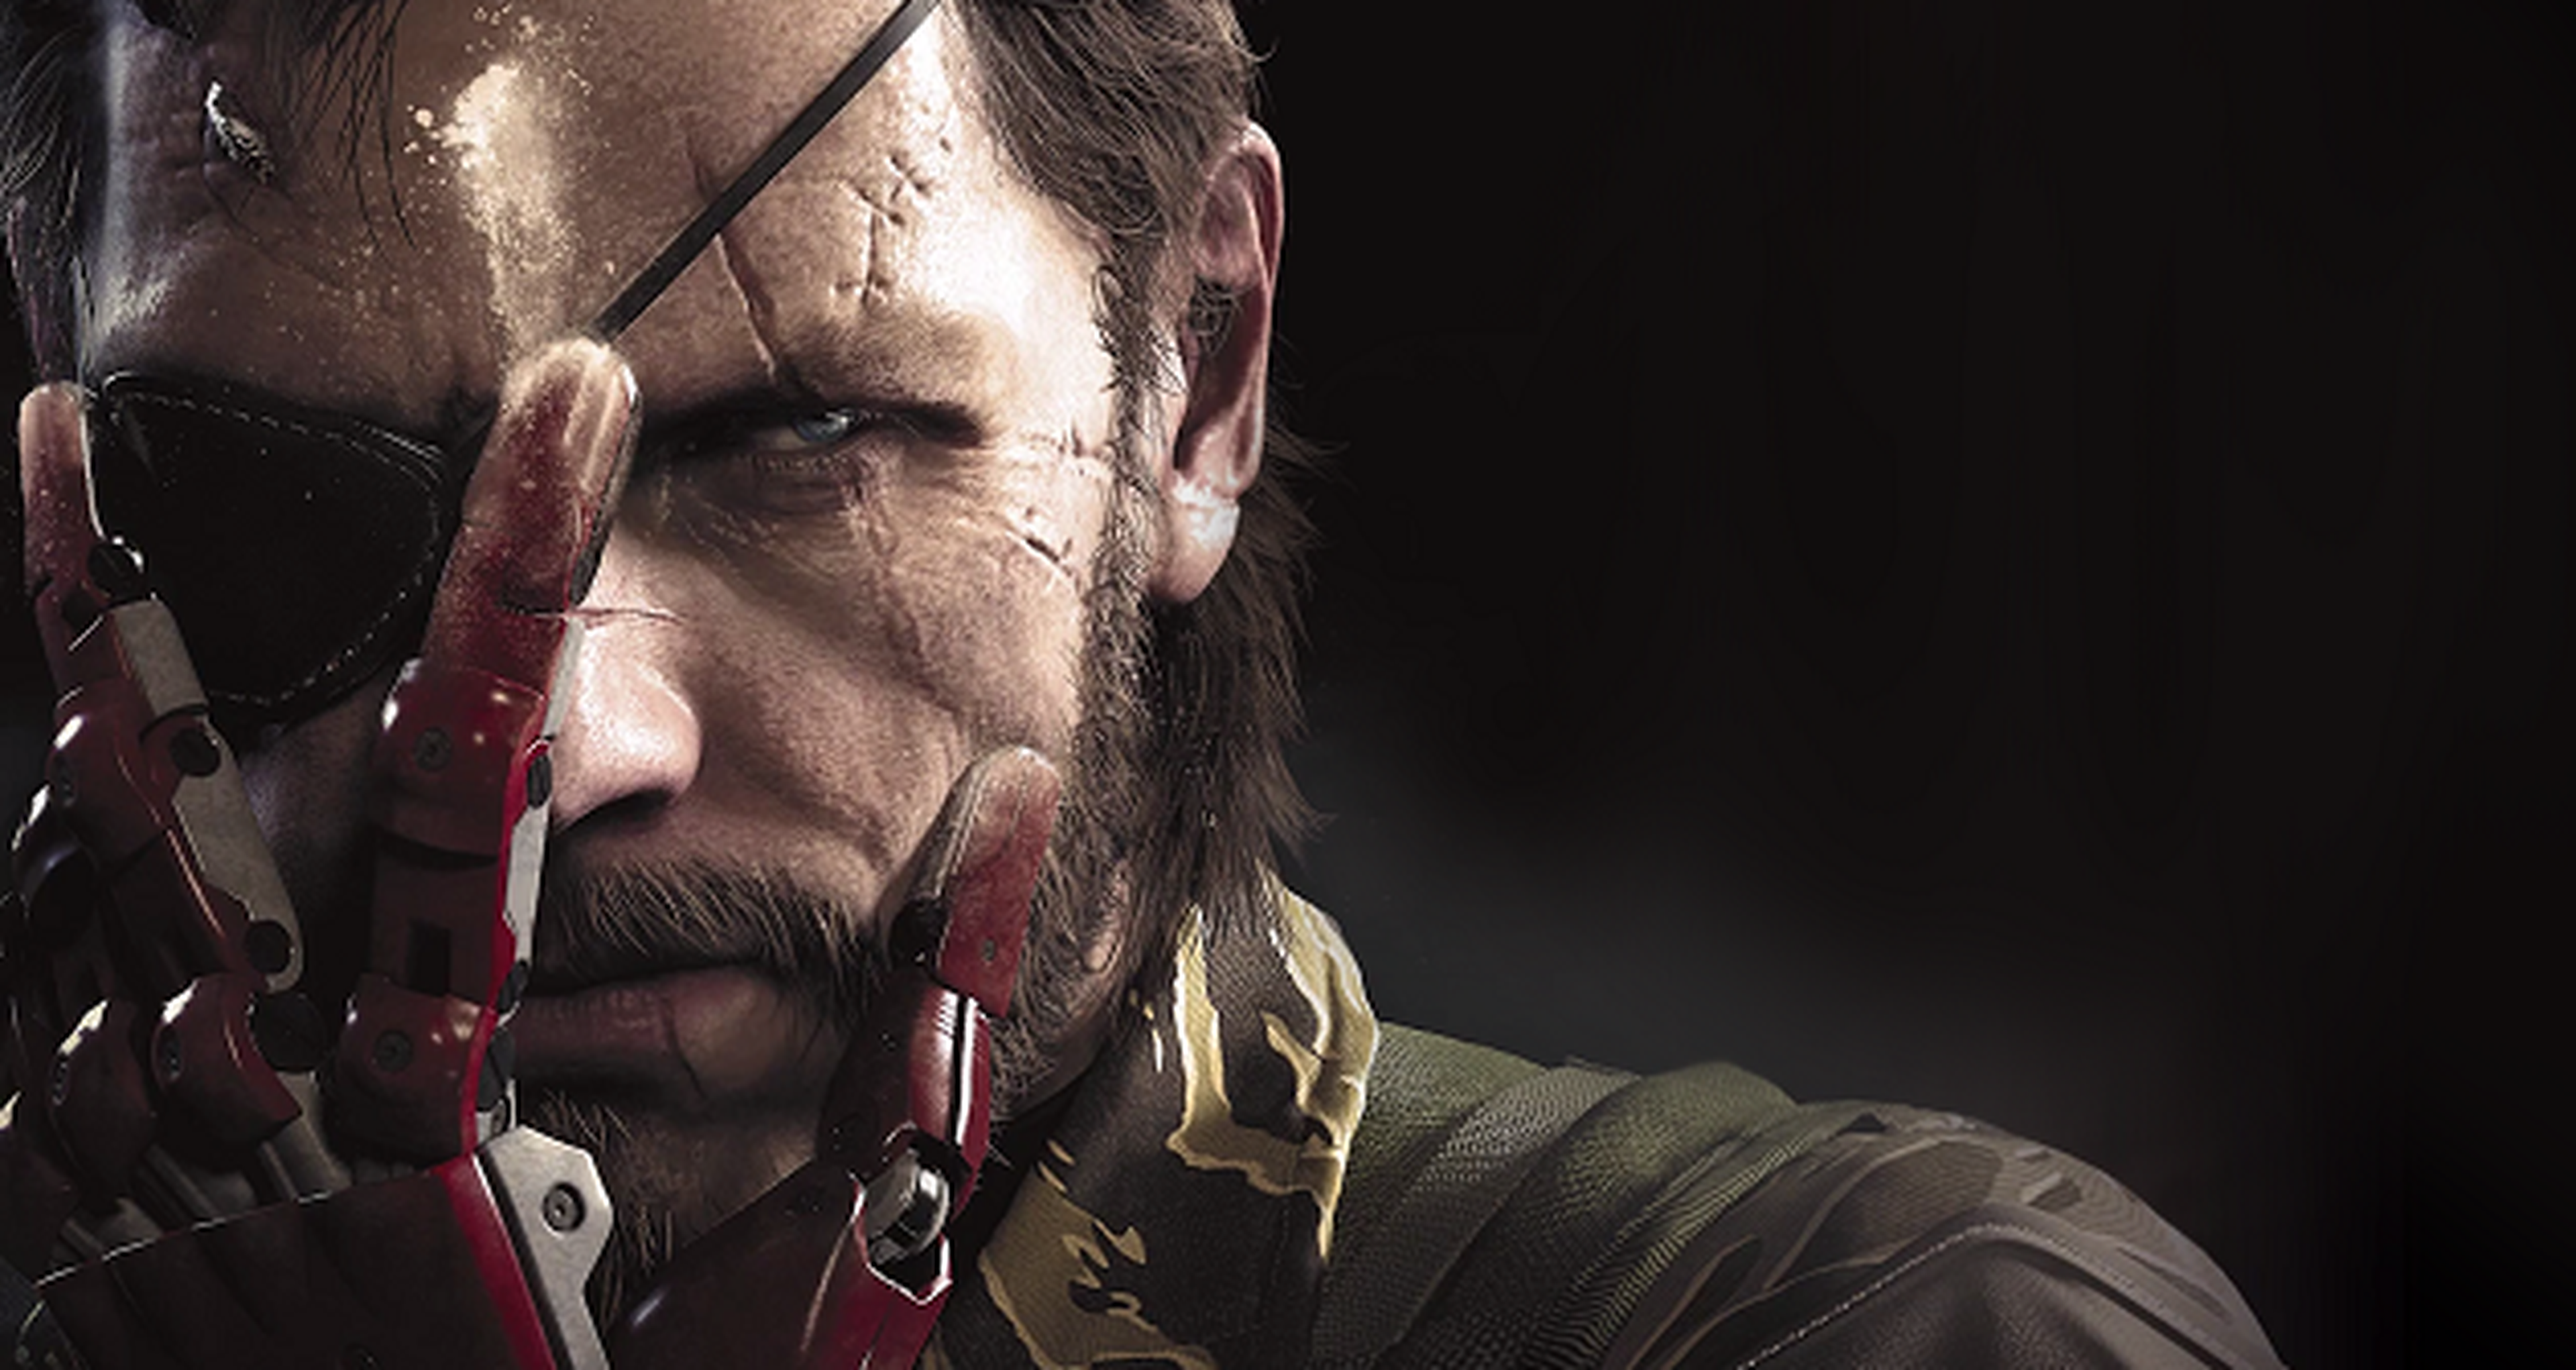 Metal Gear Solid V The Phantom Pain, nuevo error corrompe partidas en PS4